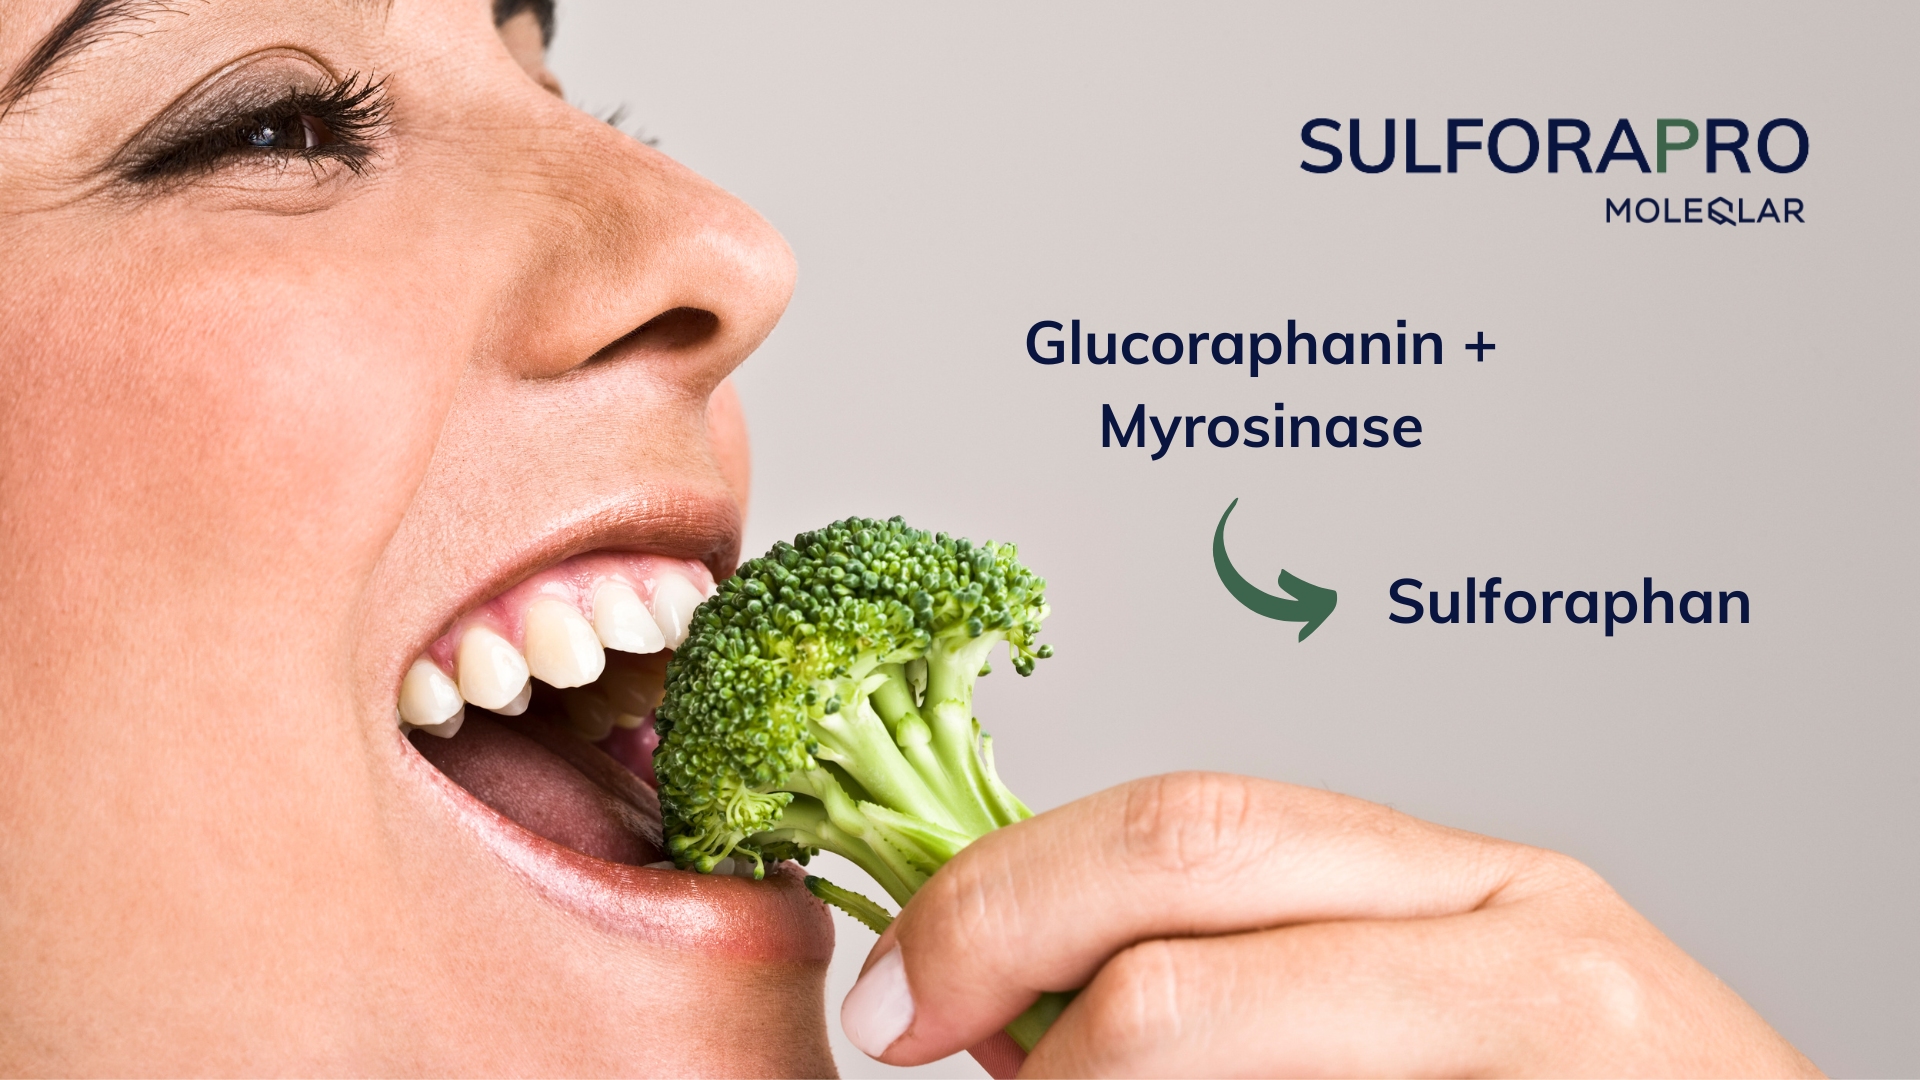 Sulforapro kombiniert Glucoraphanin und Myrosinase mit Brokkoli-Extrakt.